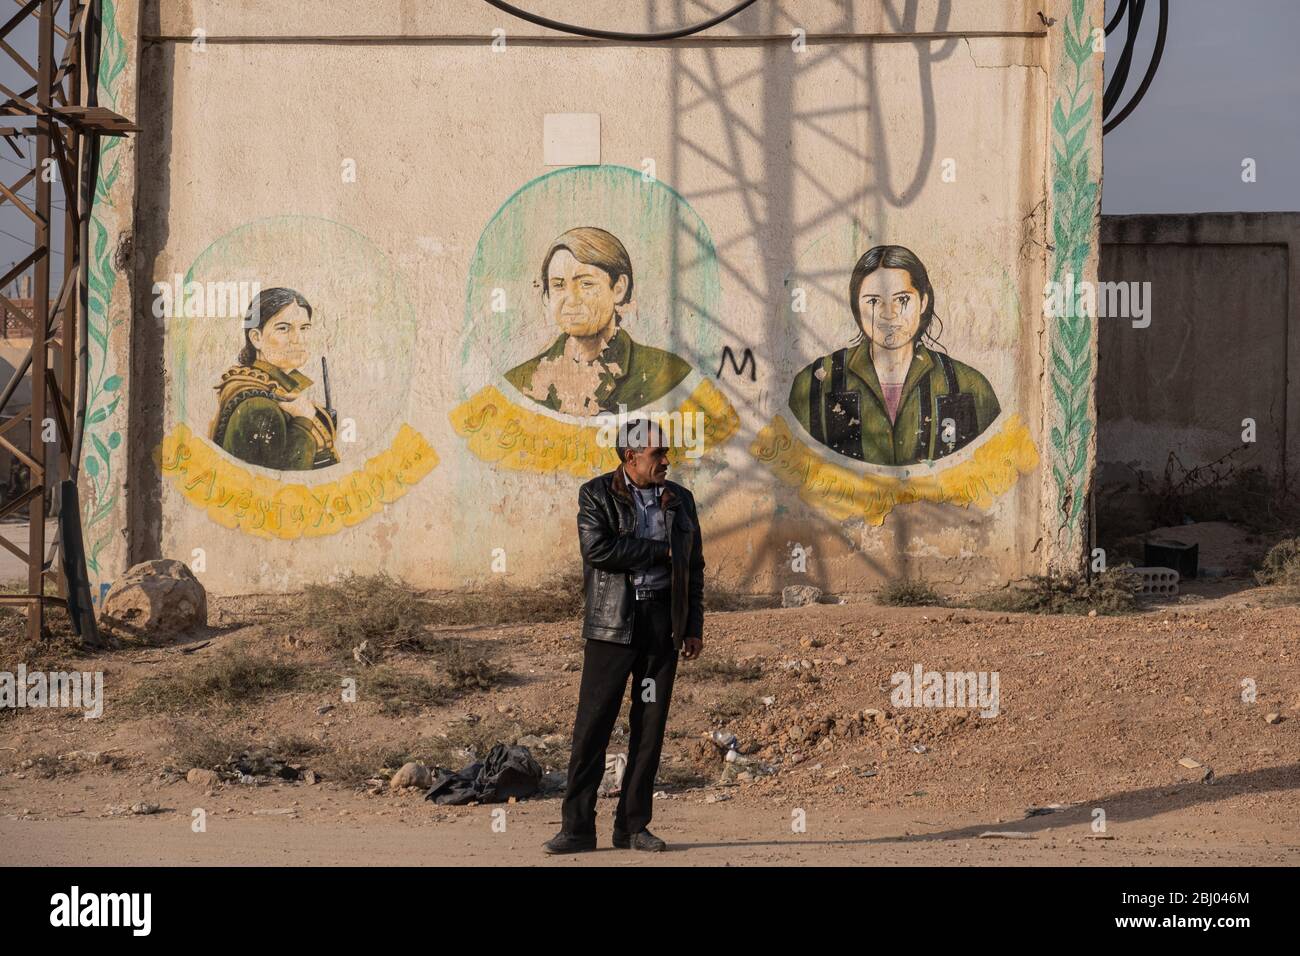 Un homme attend du côté de la route avec une murale qui signe le sacrifice des combattants kurdes pendant le conflit syrien derrière lui. Qamishli, Syrie. Banque D'Images